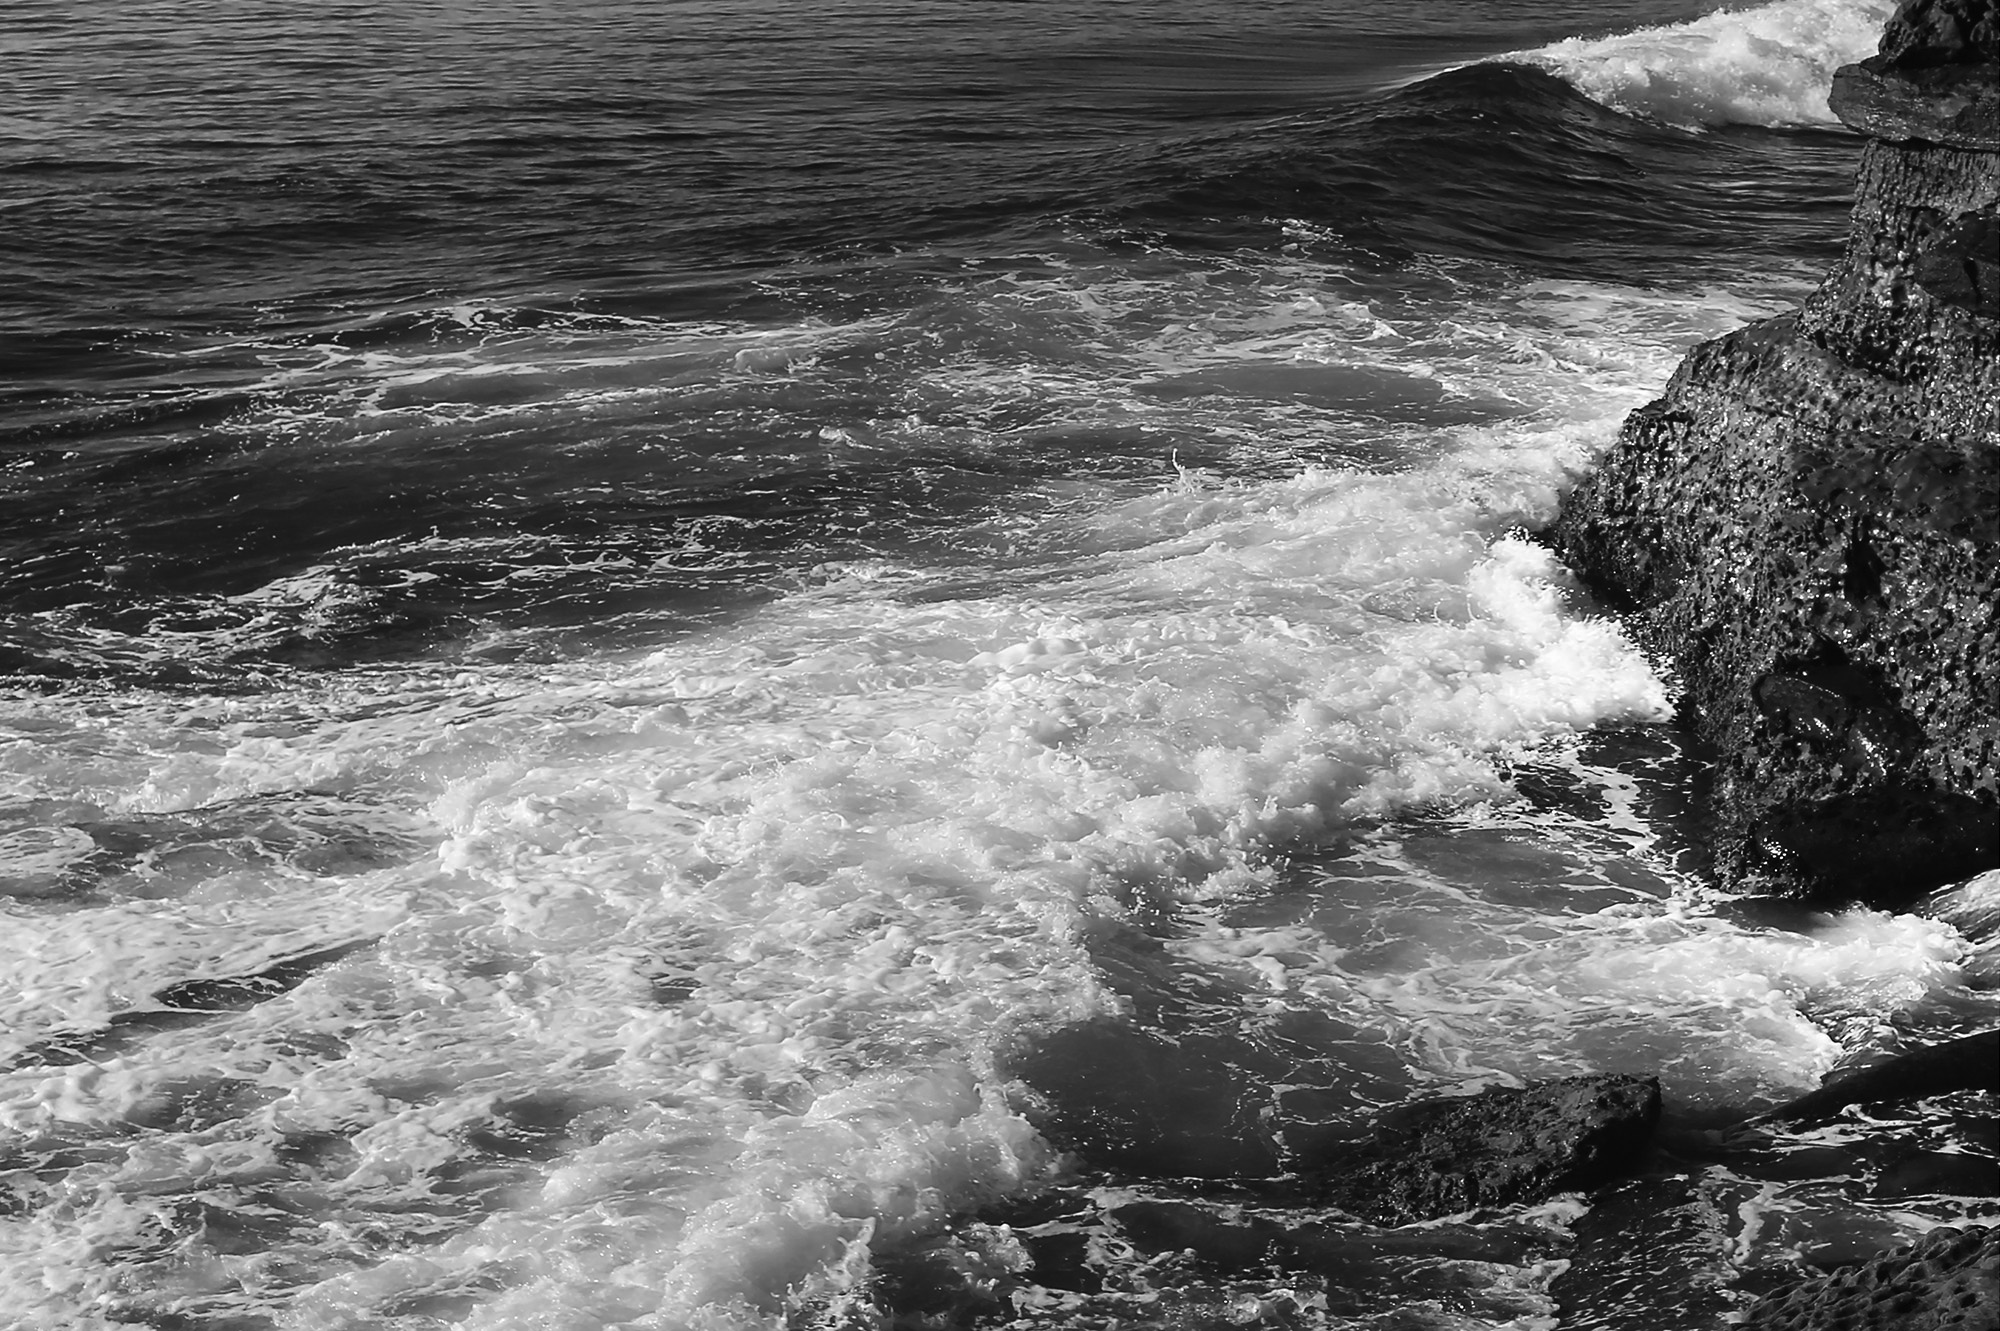 La Jolla Waves by Rich J. Velasco